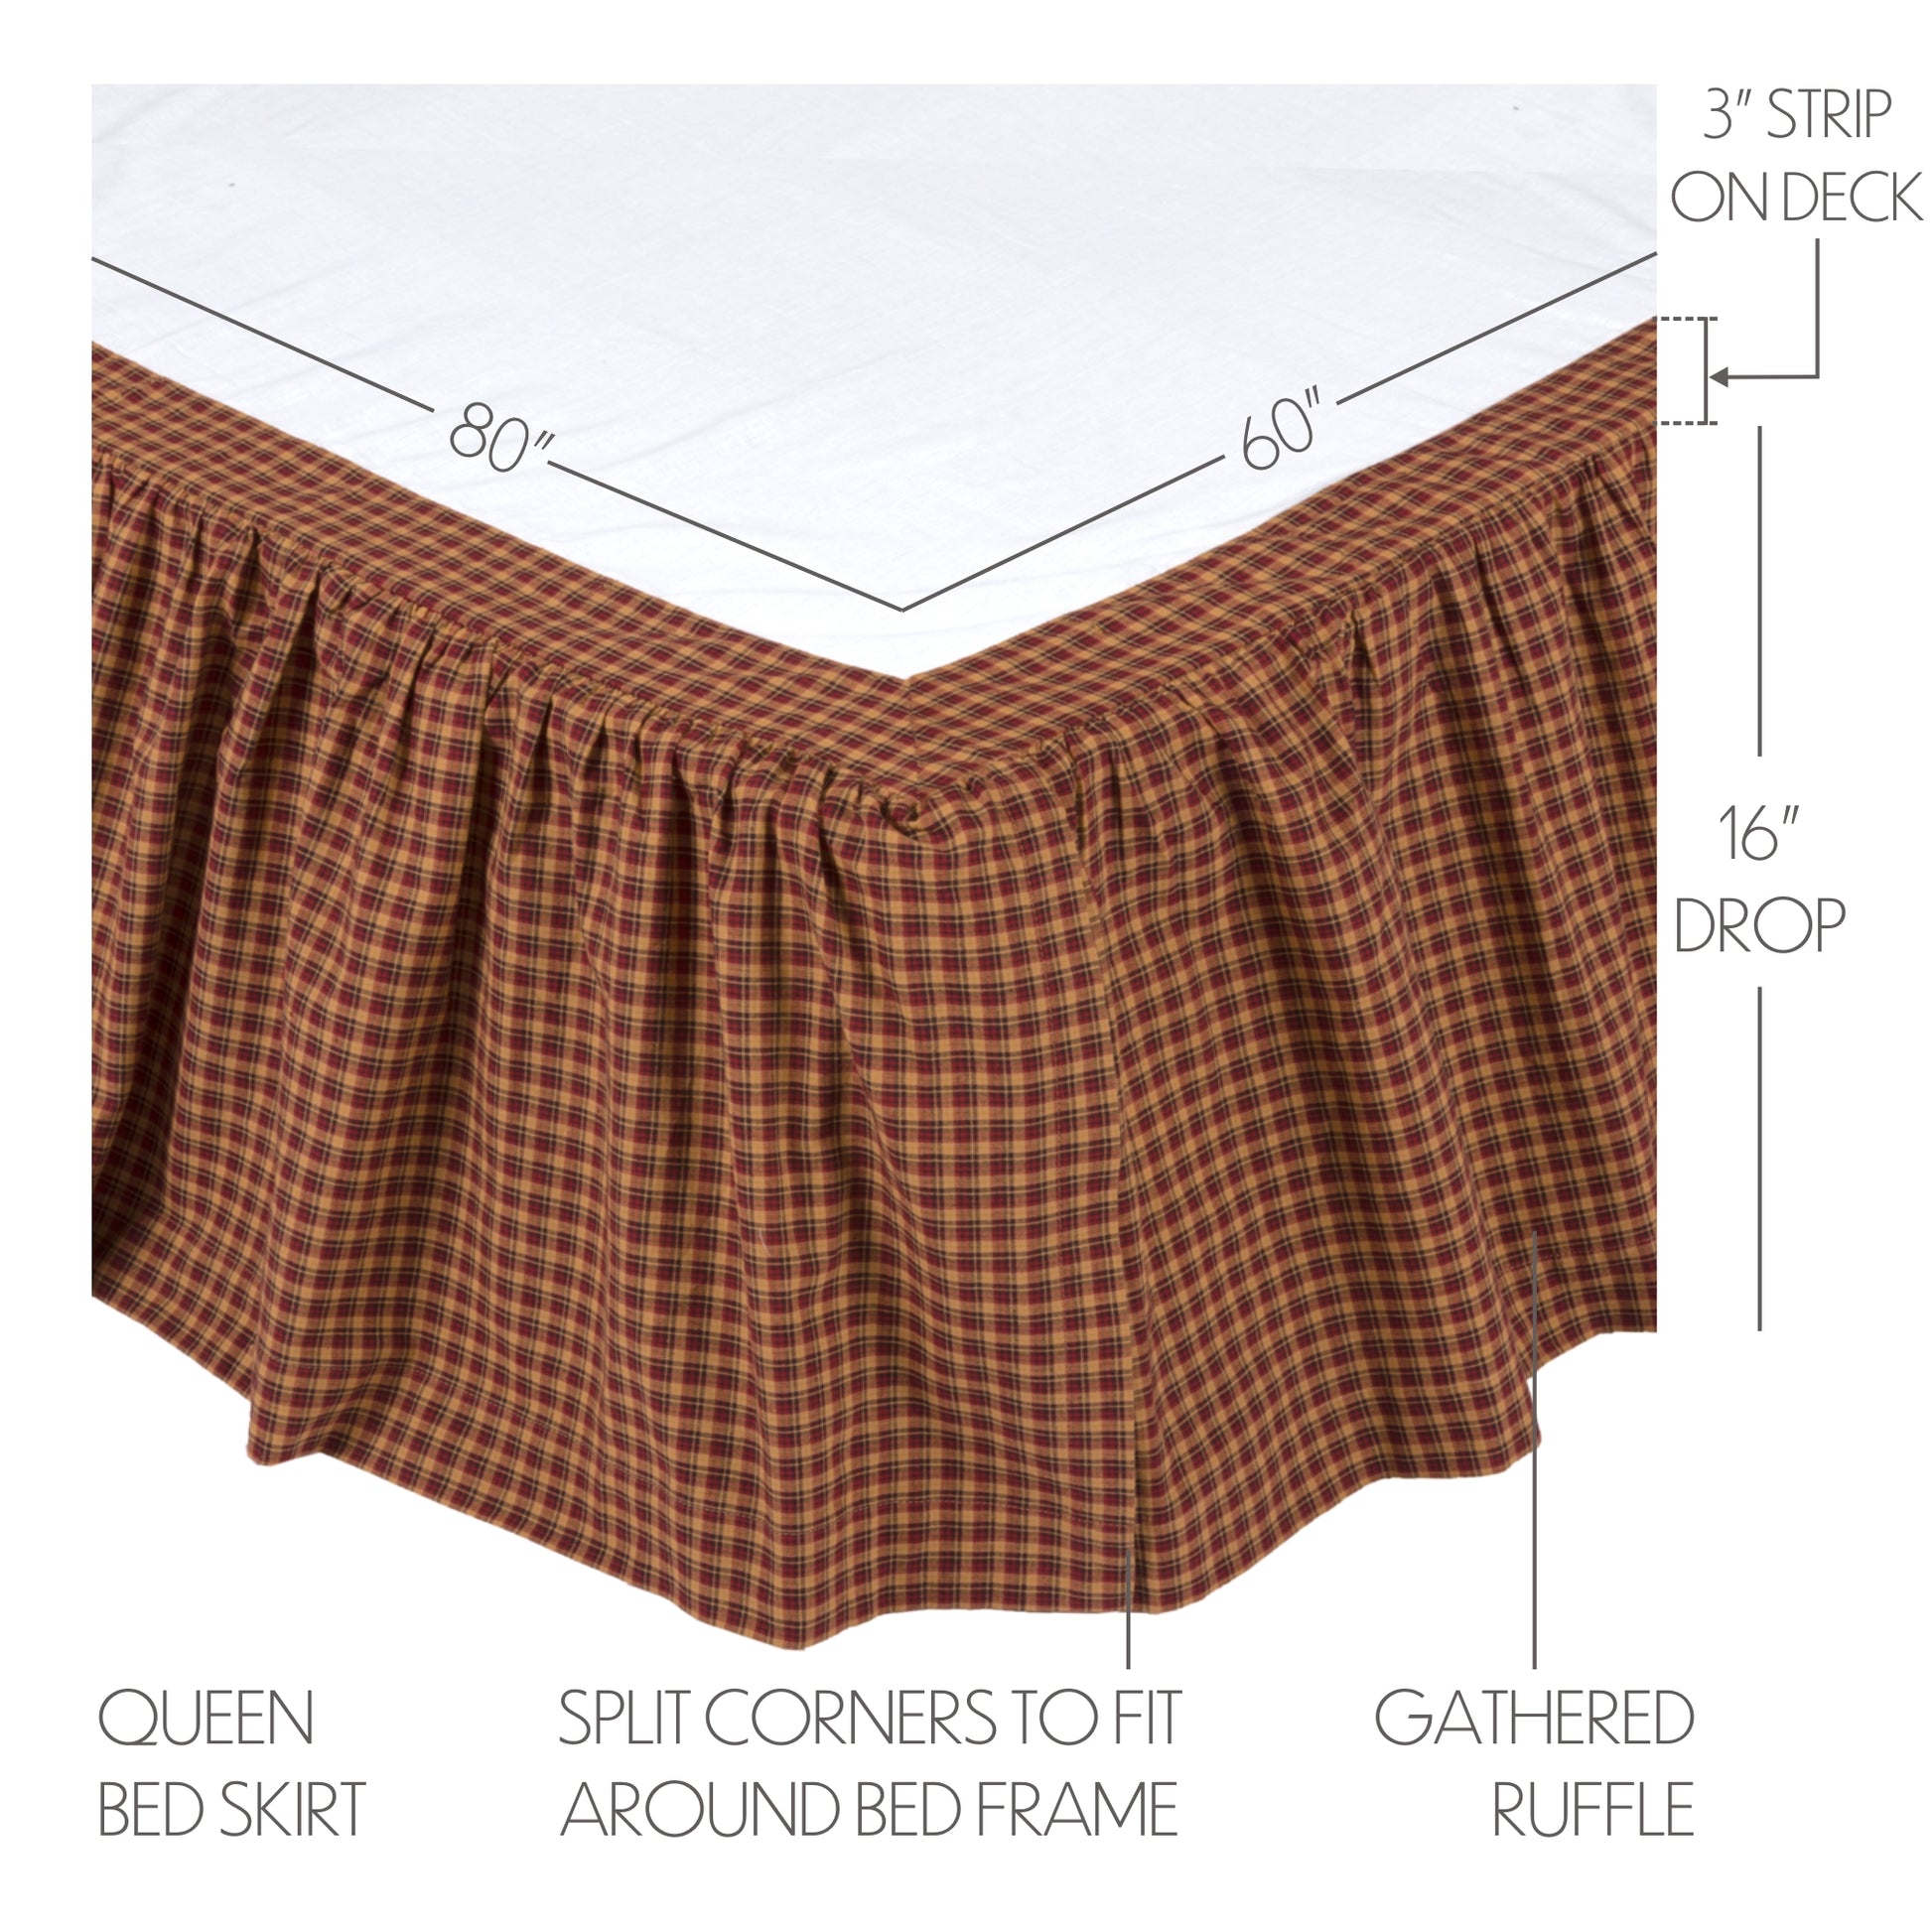 10440-Patriotic-Patch-Queen-Bed-Skirt-60x80x16-image-1